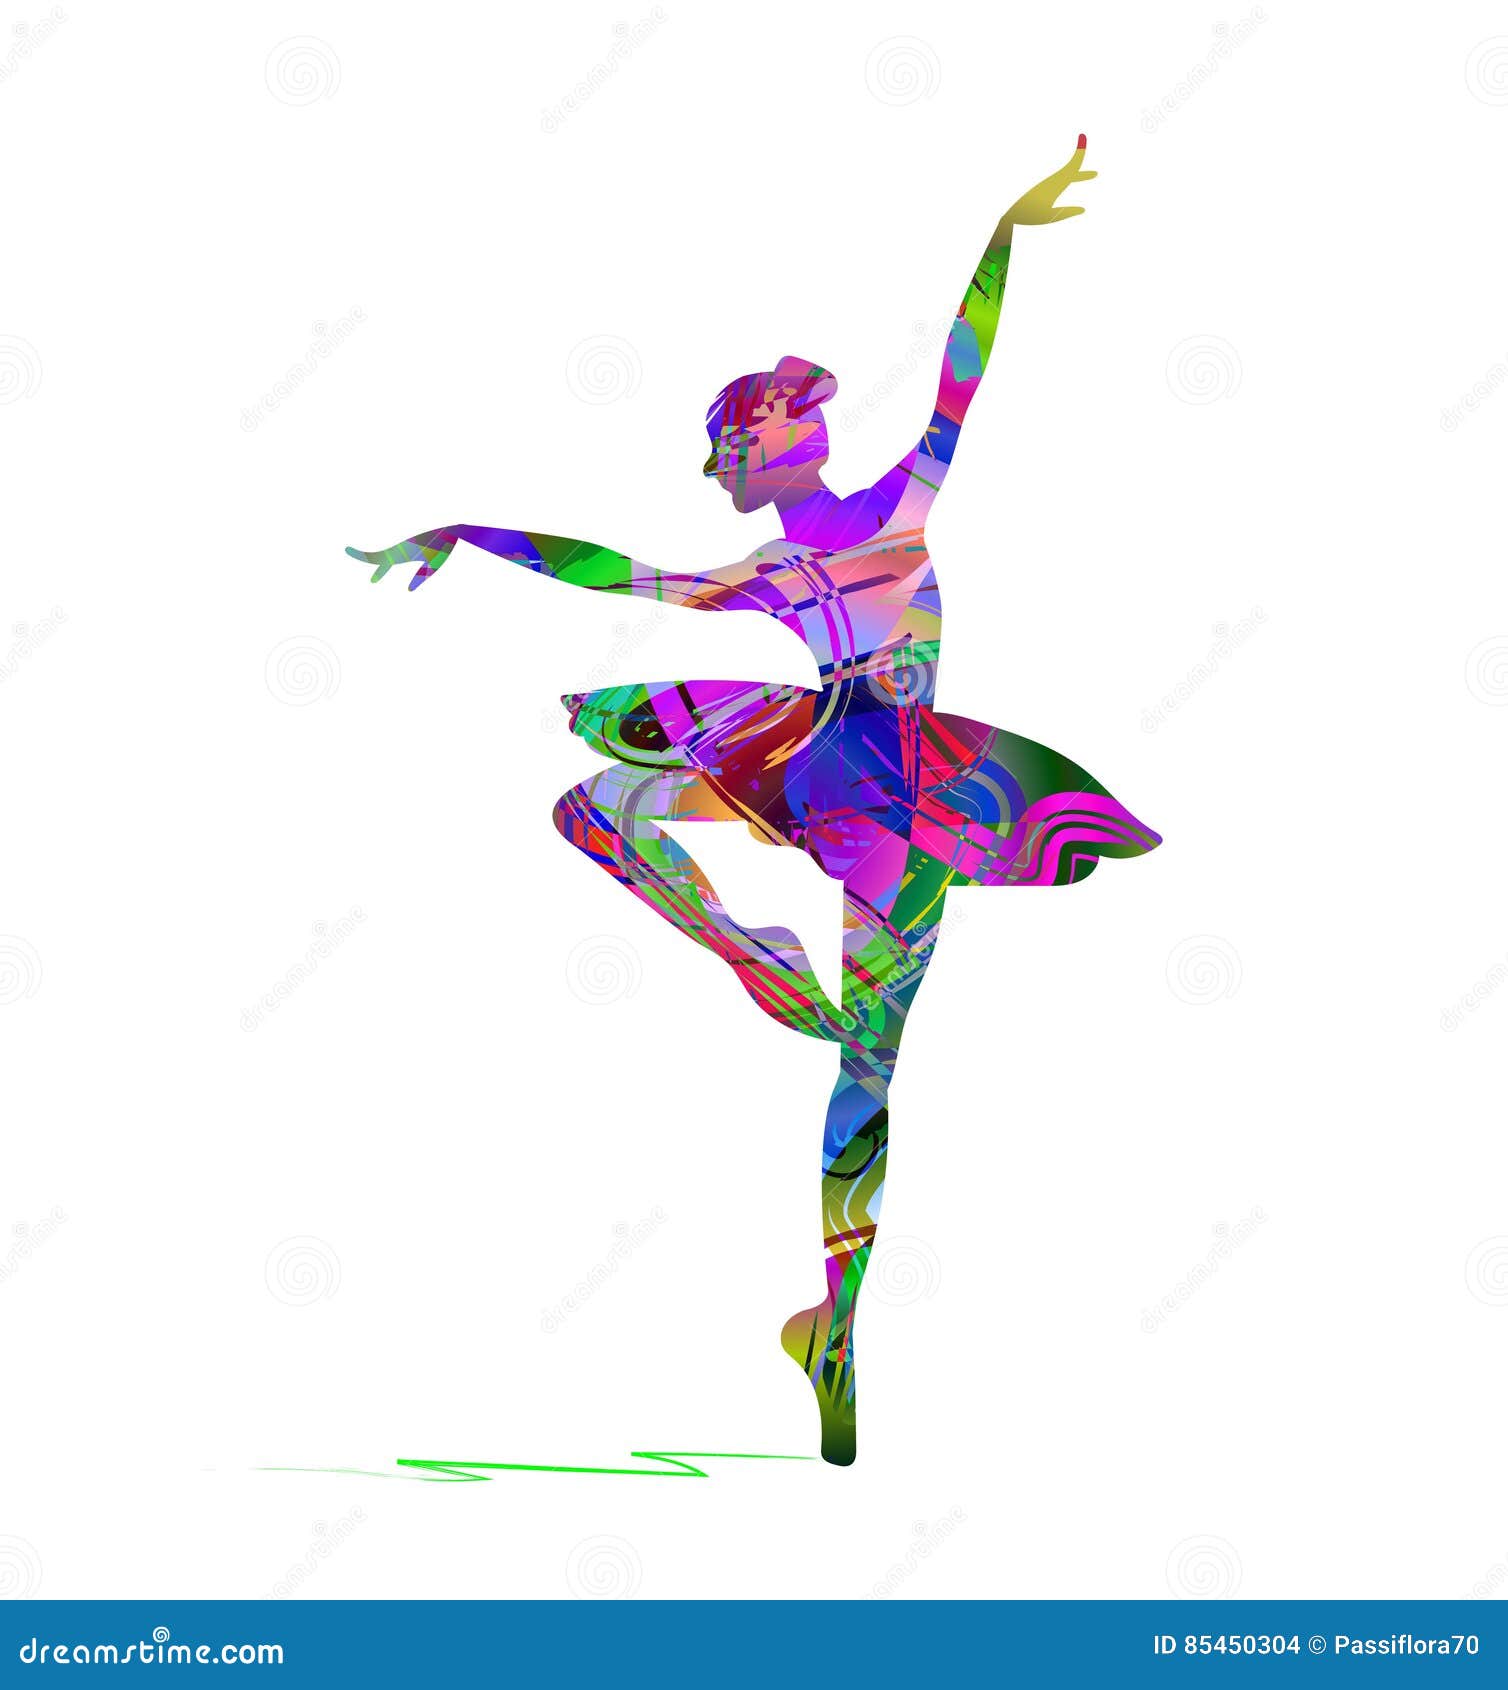 Silueta bailarina ballet imágenes de stock de arte vectorial